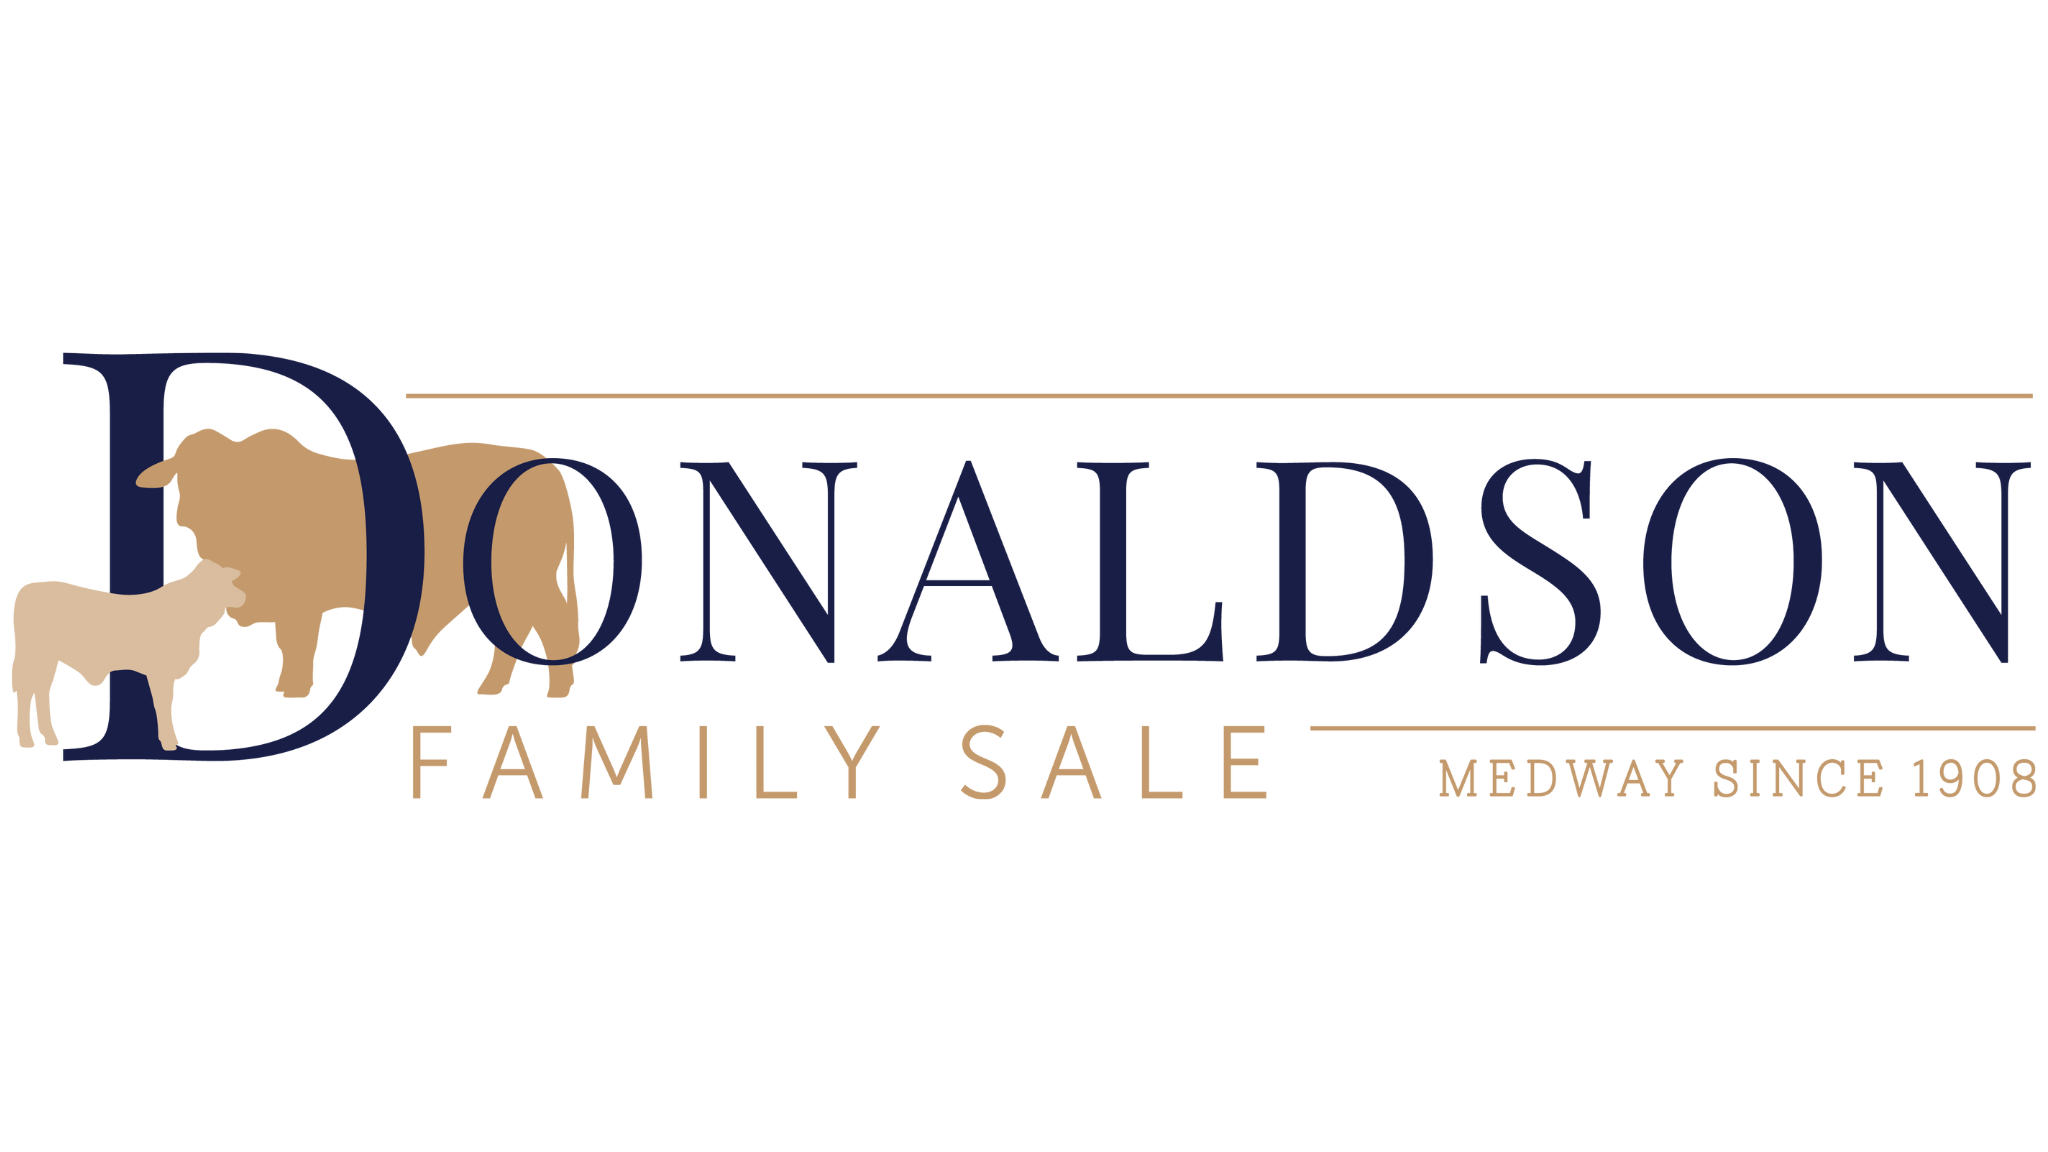 Donaldson Family Sale